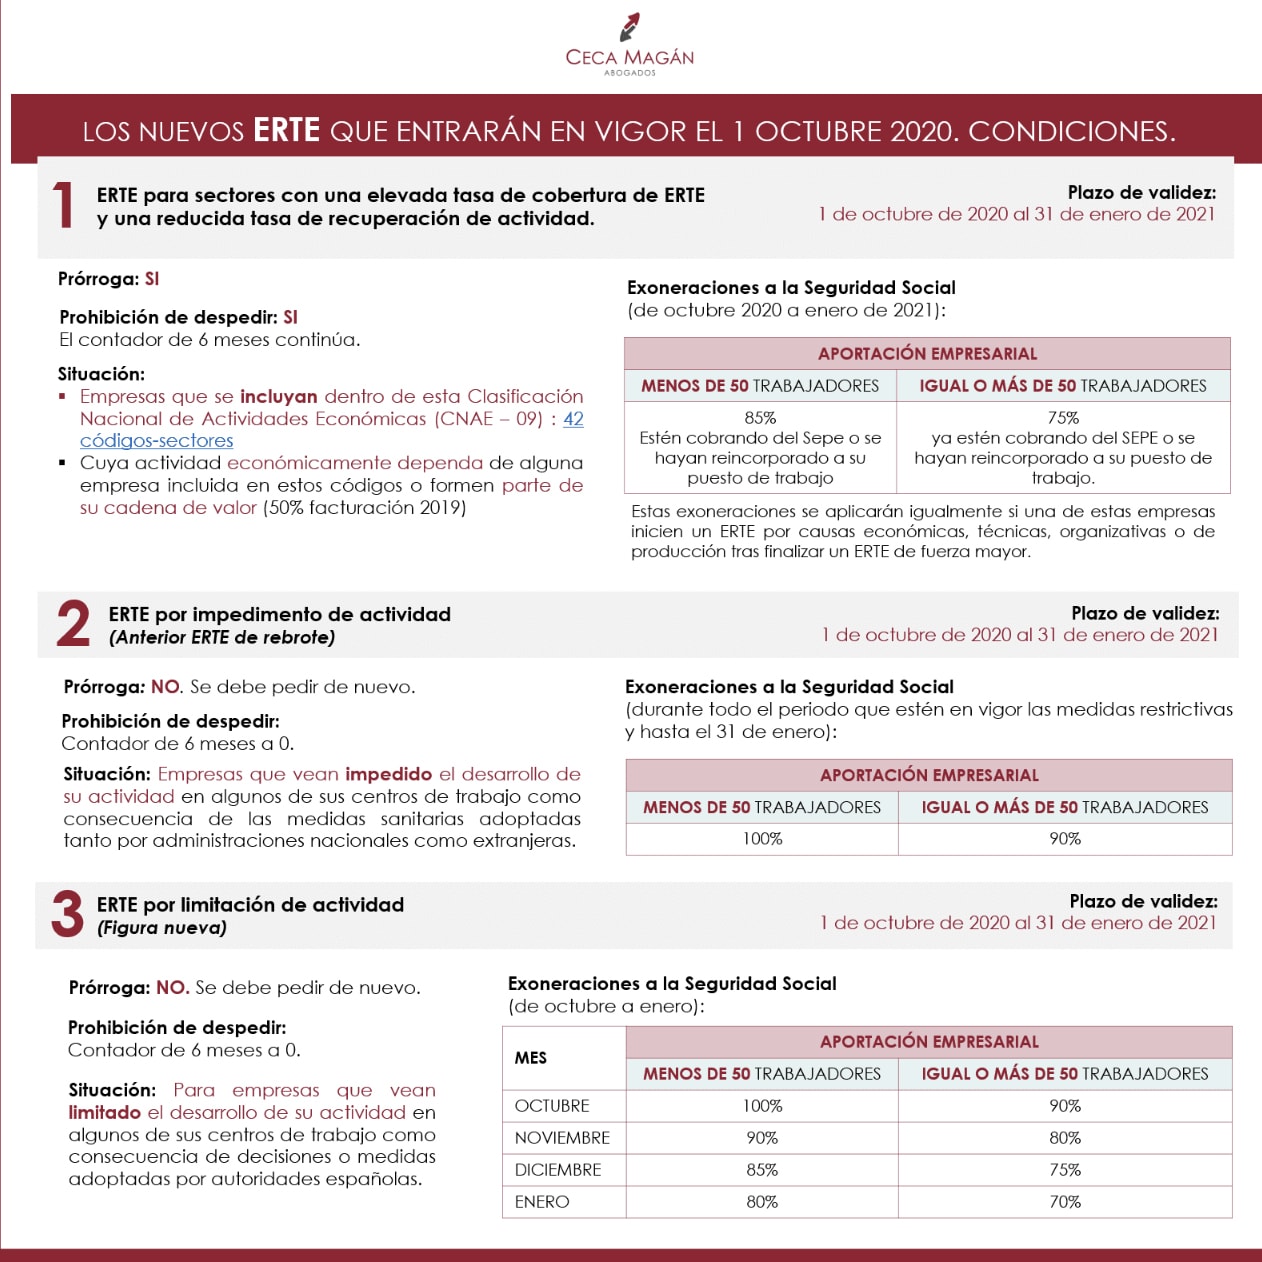 Infografía: “Los nuevos ERTE que entran en vigor el 1 de octubre: Condiciones”